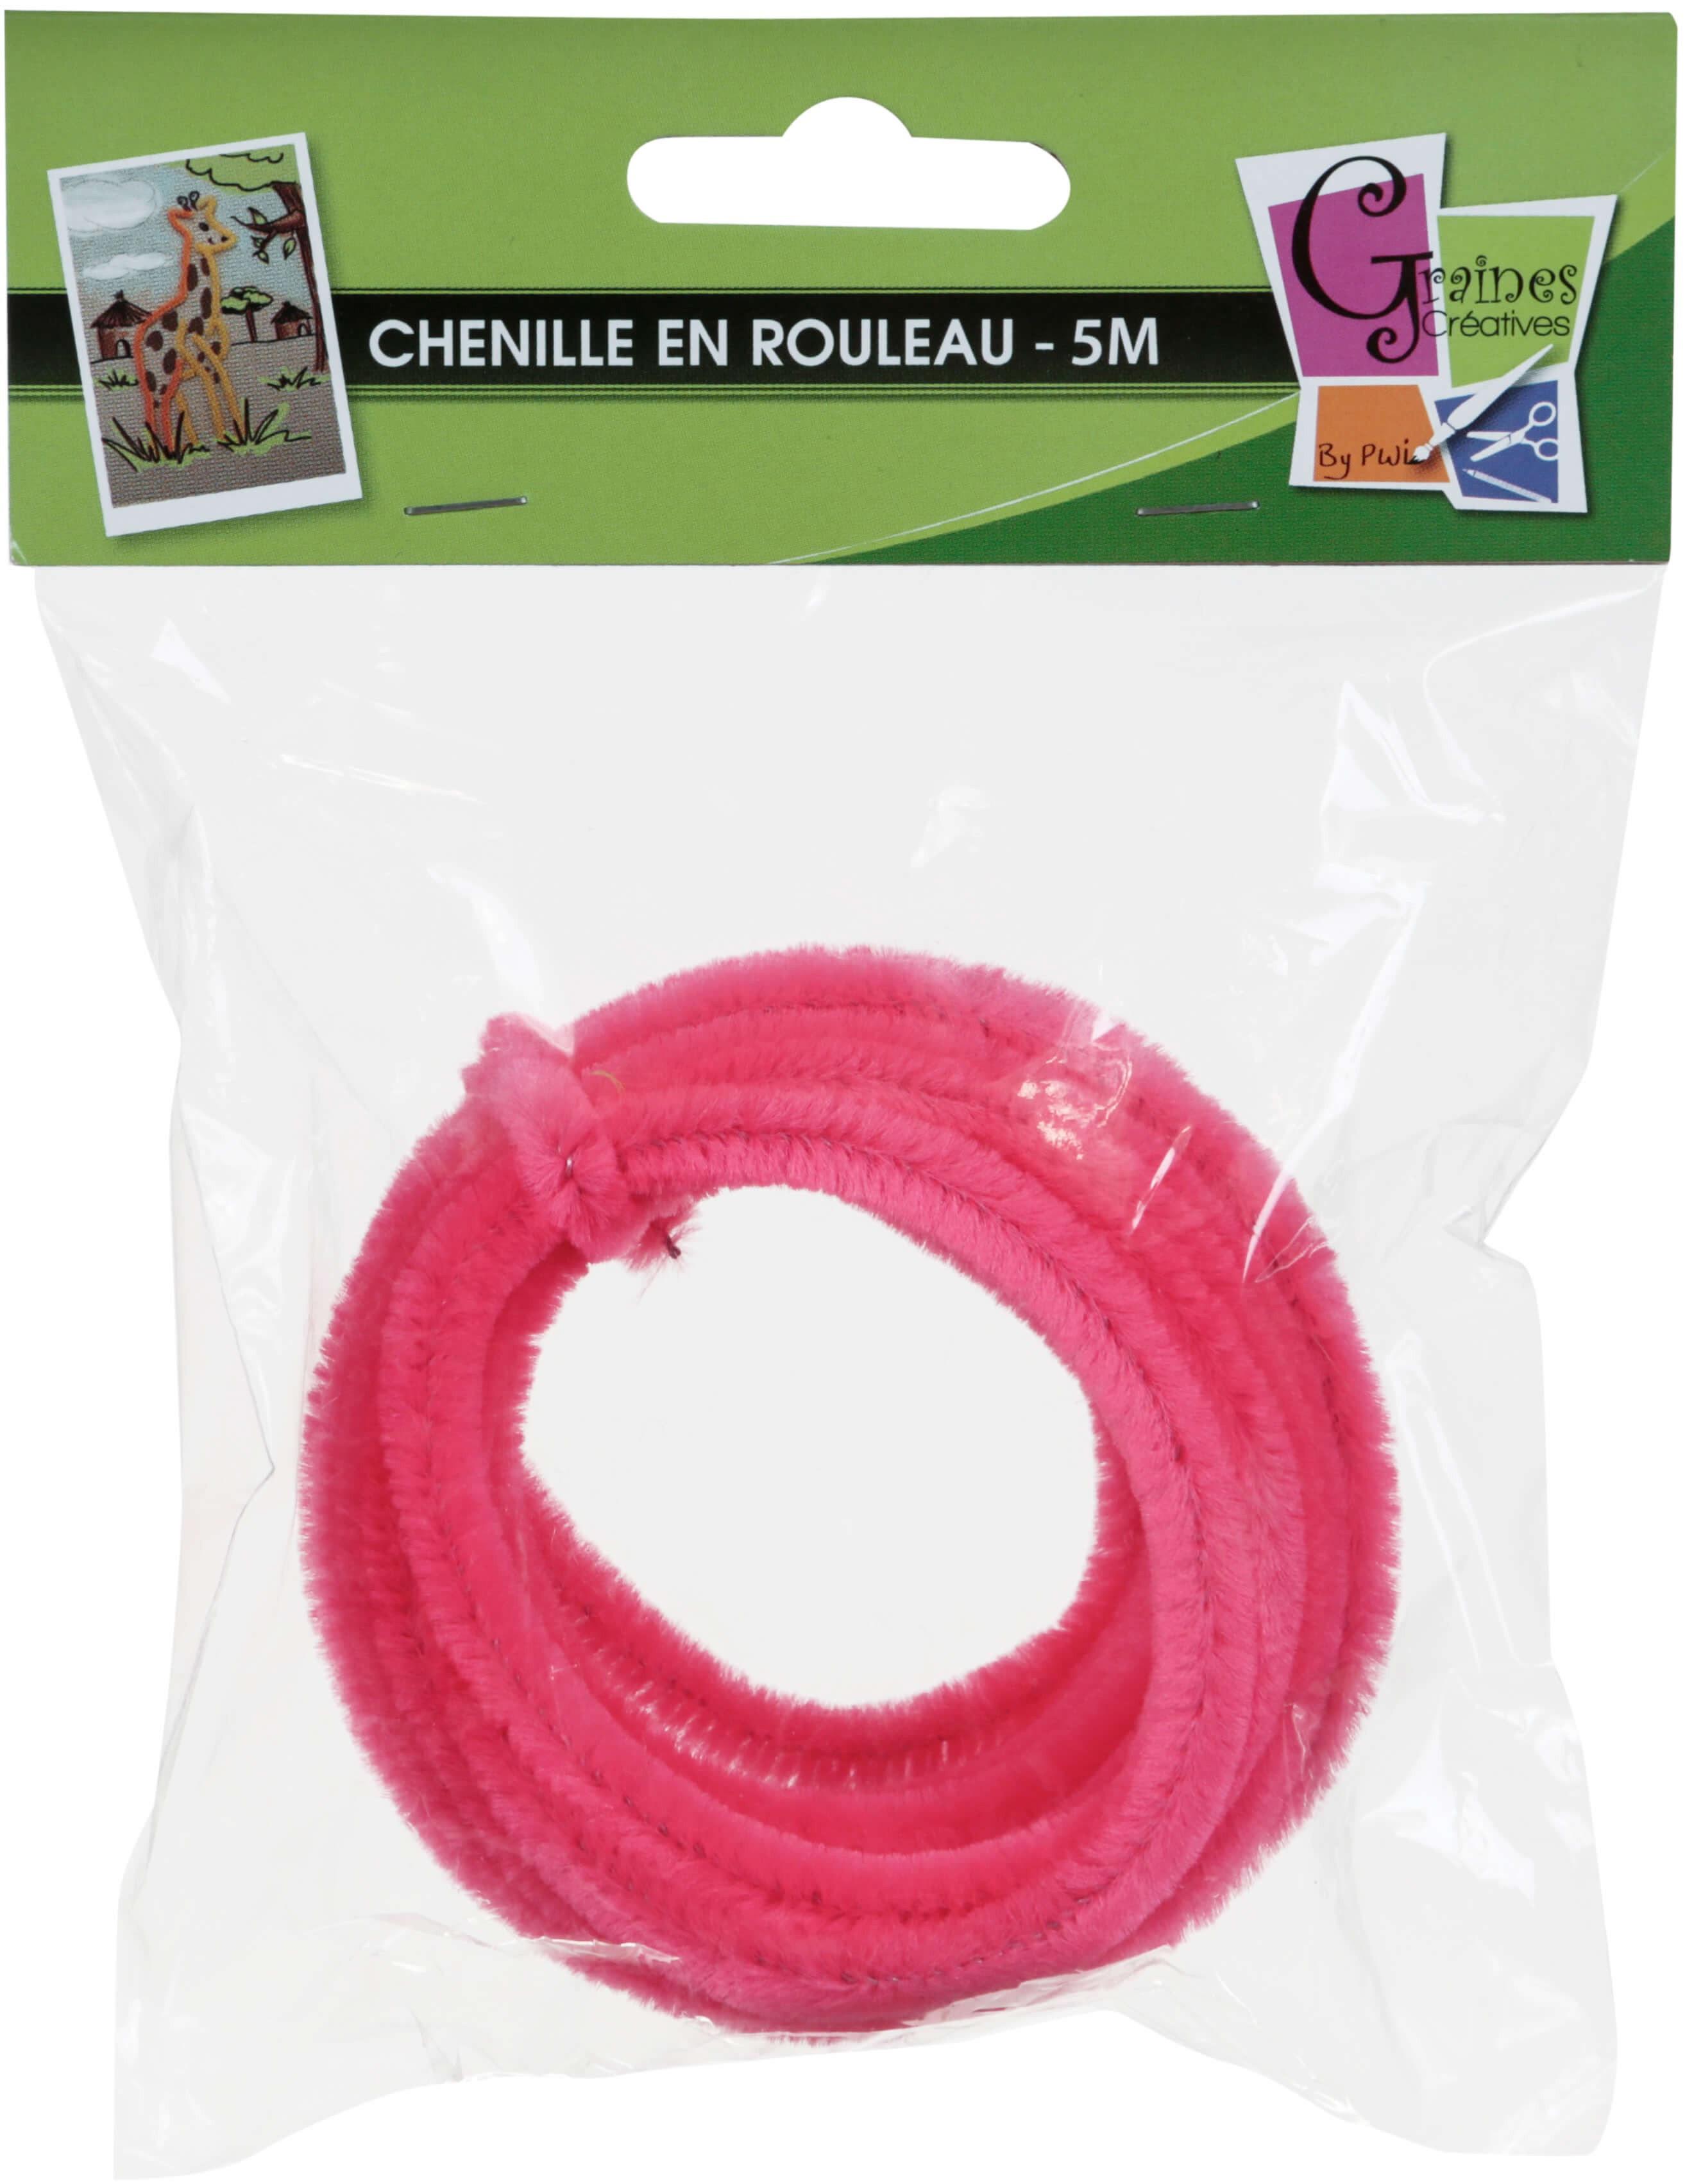 Rayher Fil chenille Mix, rose oeillet, 0,9x30cm, 6 couleurs à 5 pièces, pas  cher 